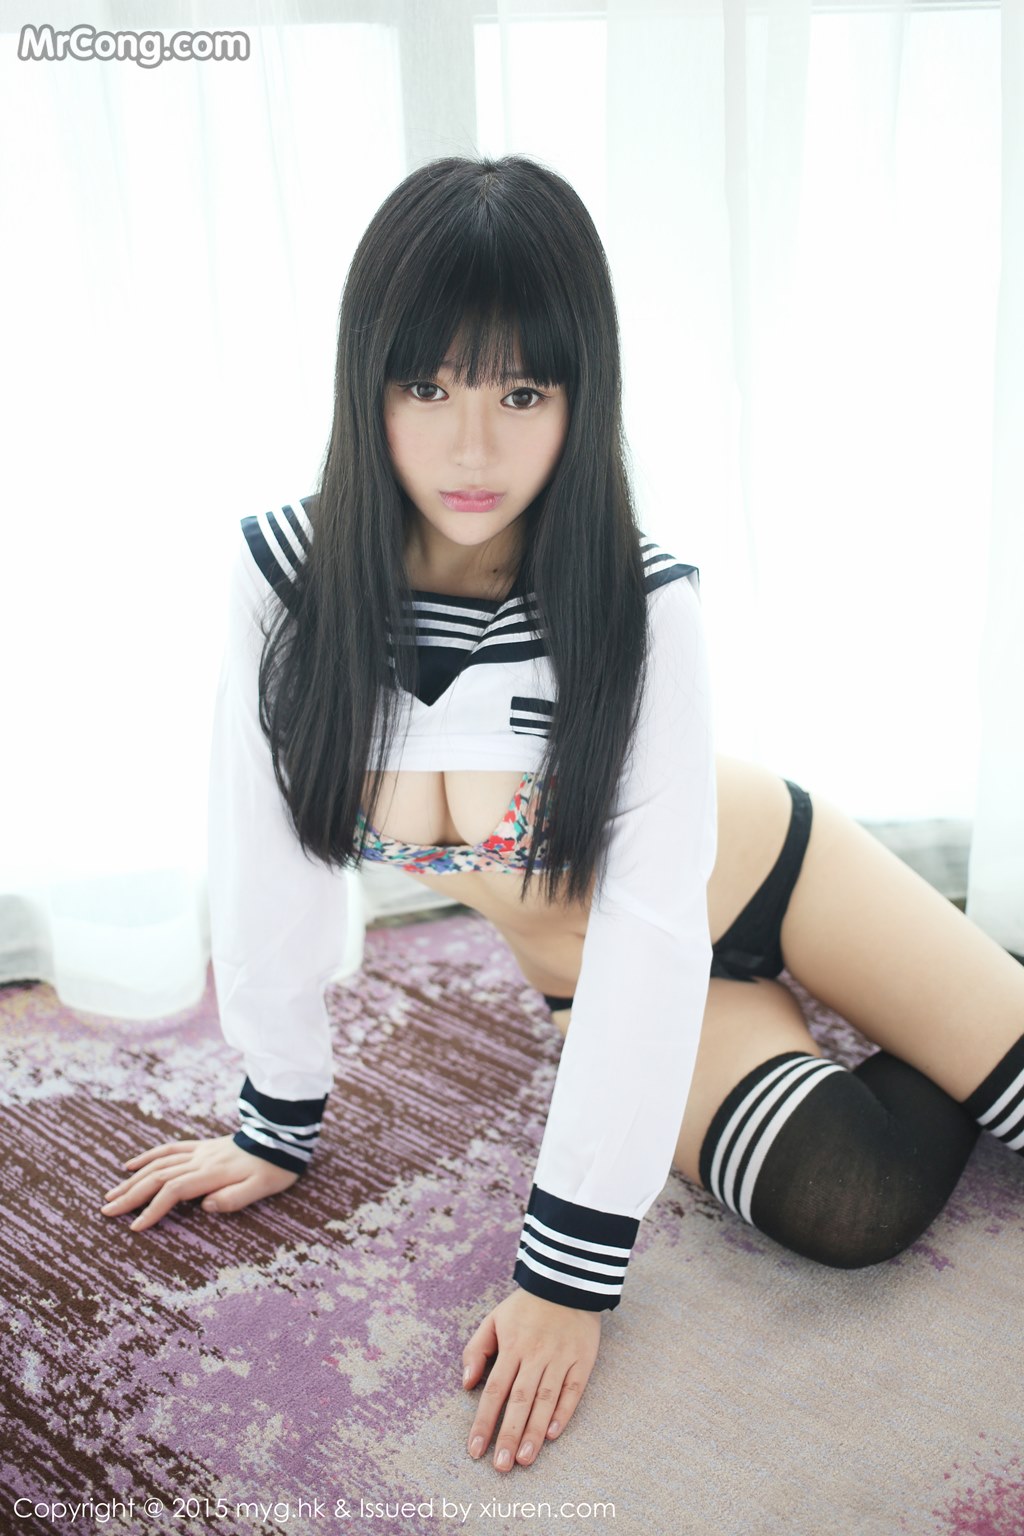 MyGirl Vol.092: Models Ba Bao icey (八宝 icey) and Fiona (伊 雨 蔓) (42 photos) photo 1-3